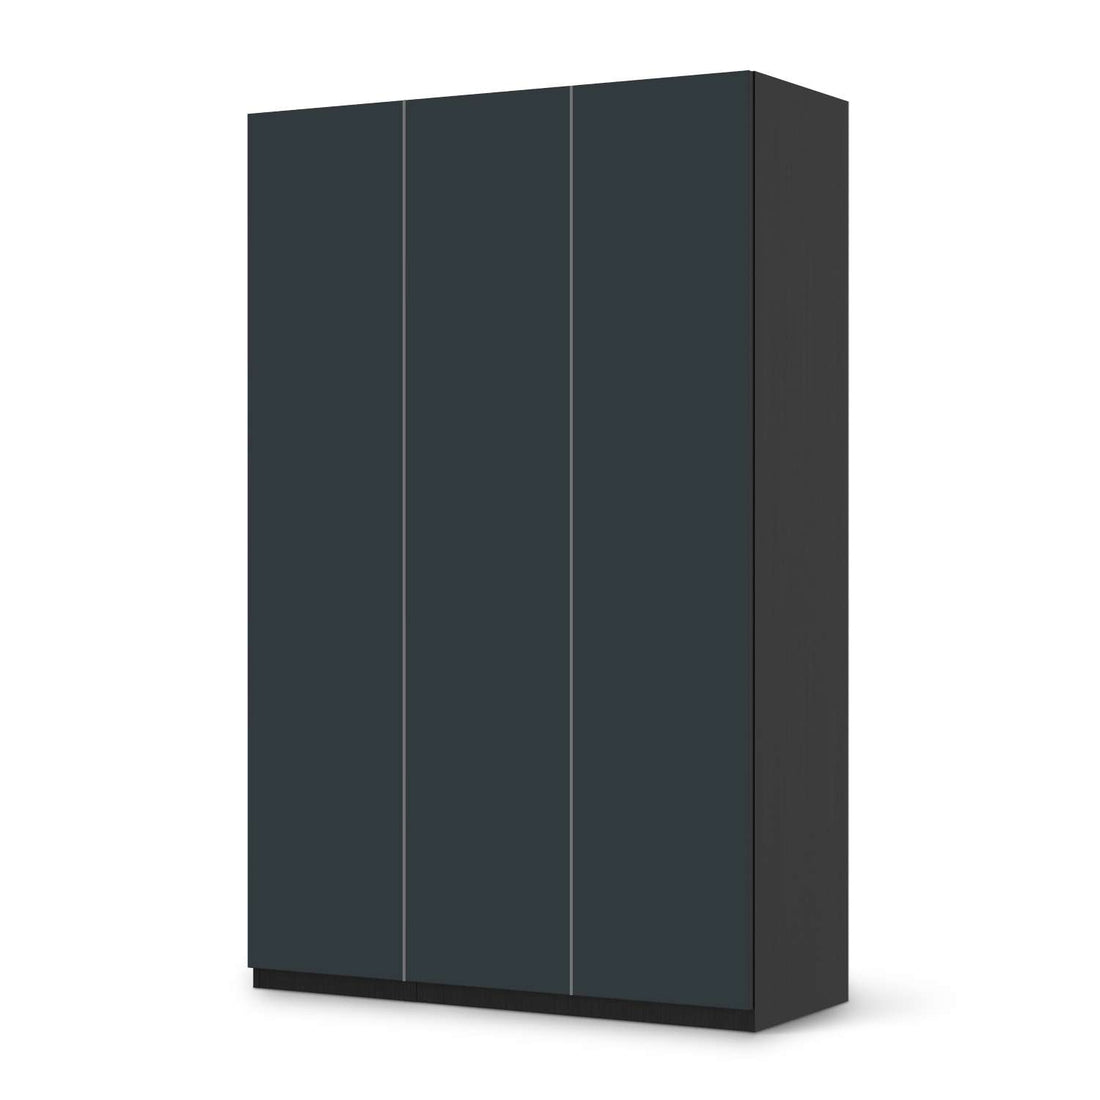 Selbstklebende Folie Blaugrau Dark - IKEA Pax Schrank 236 cm Höhe - 3 Türen - schwarz